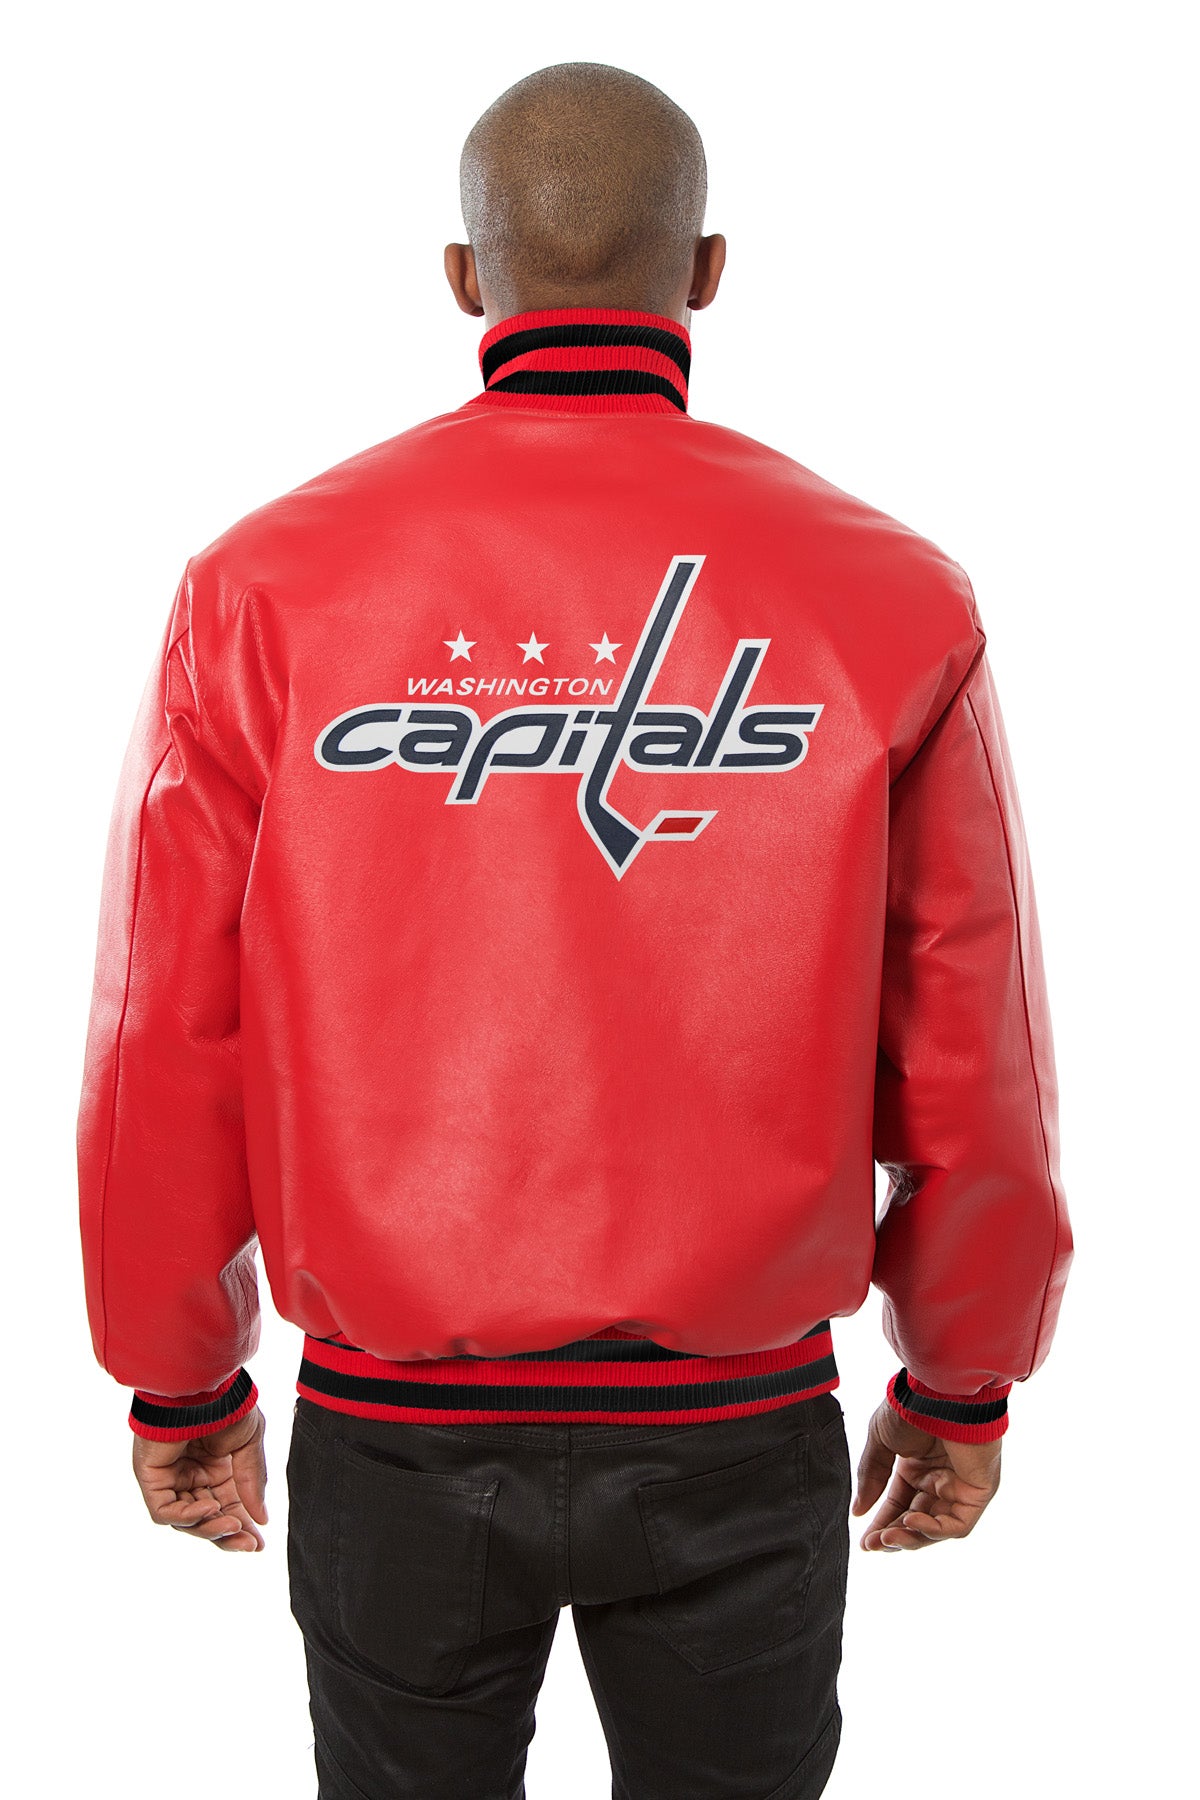 Washington Capitals Full Leather Jacket